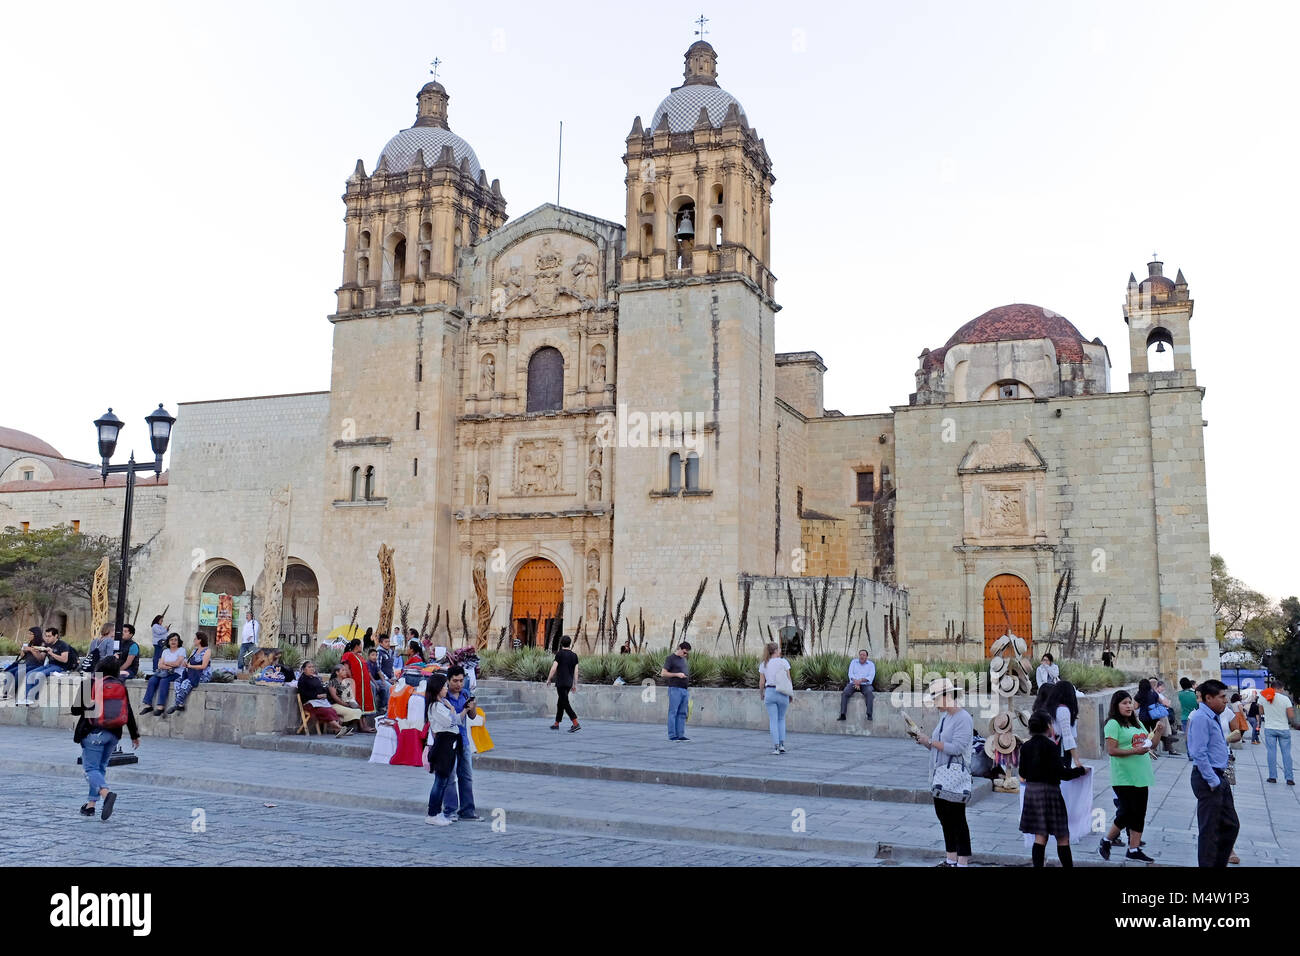 The Templo de Santo Domingo, also known as the Churt of Santo Domingo stands in Oaxaca, Mexico. Stock Photo